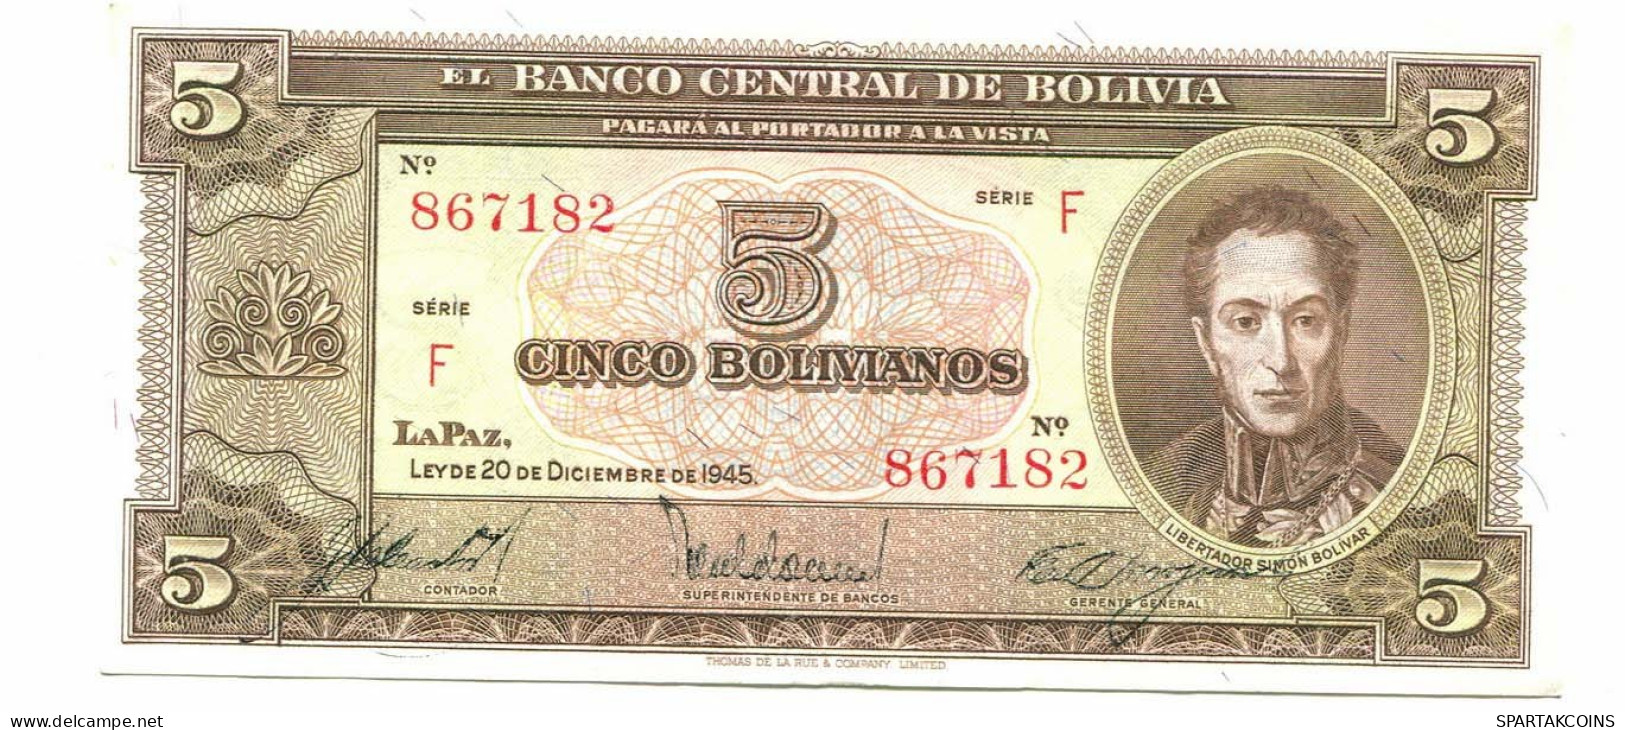 BOLIVIA 5 BOLIVIANOS 1945 SERIE F AUNC Paper Money Banknote #P10789.4 - Lokale Ausgaben